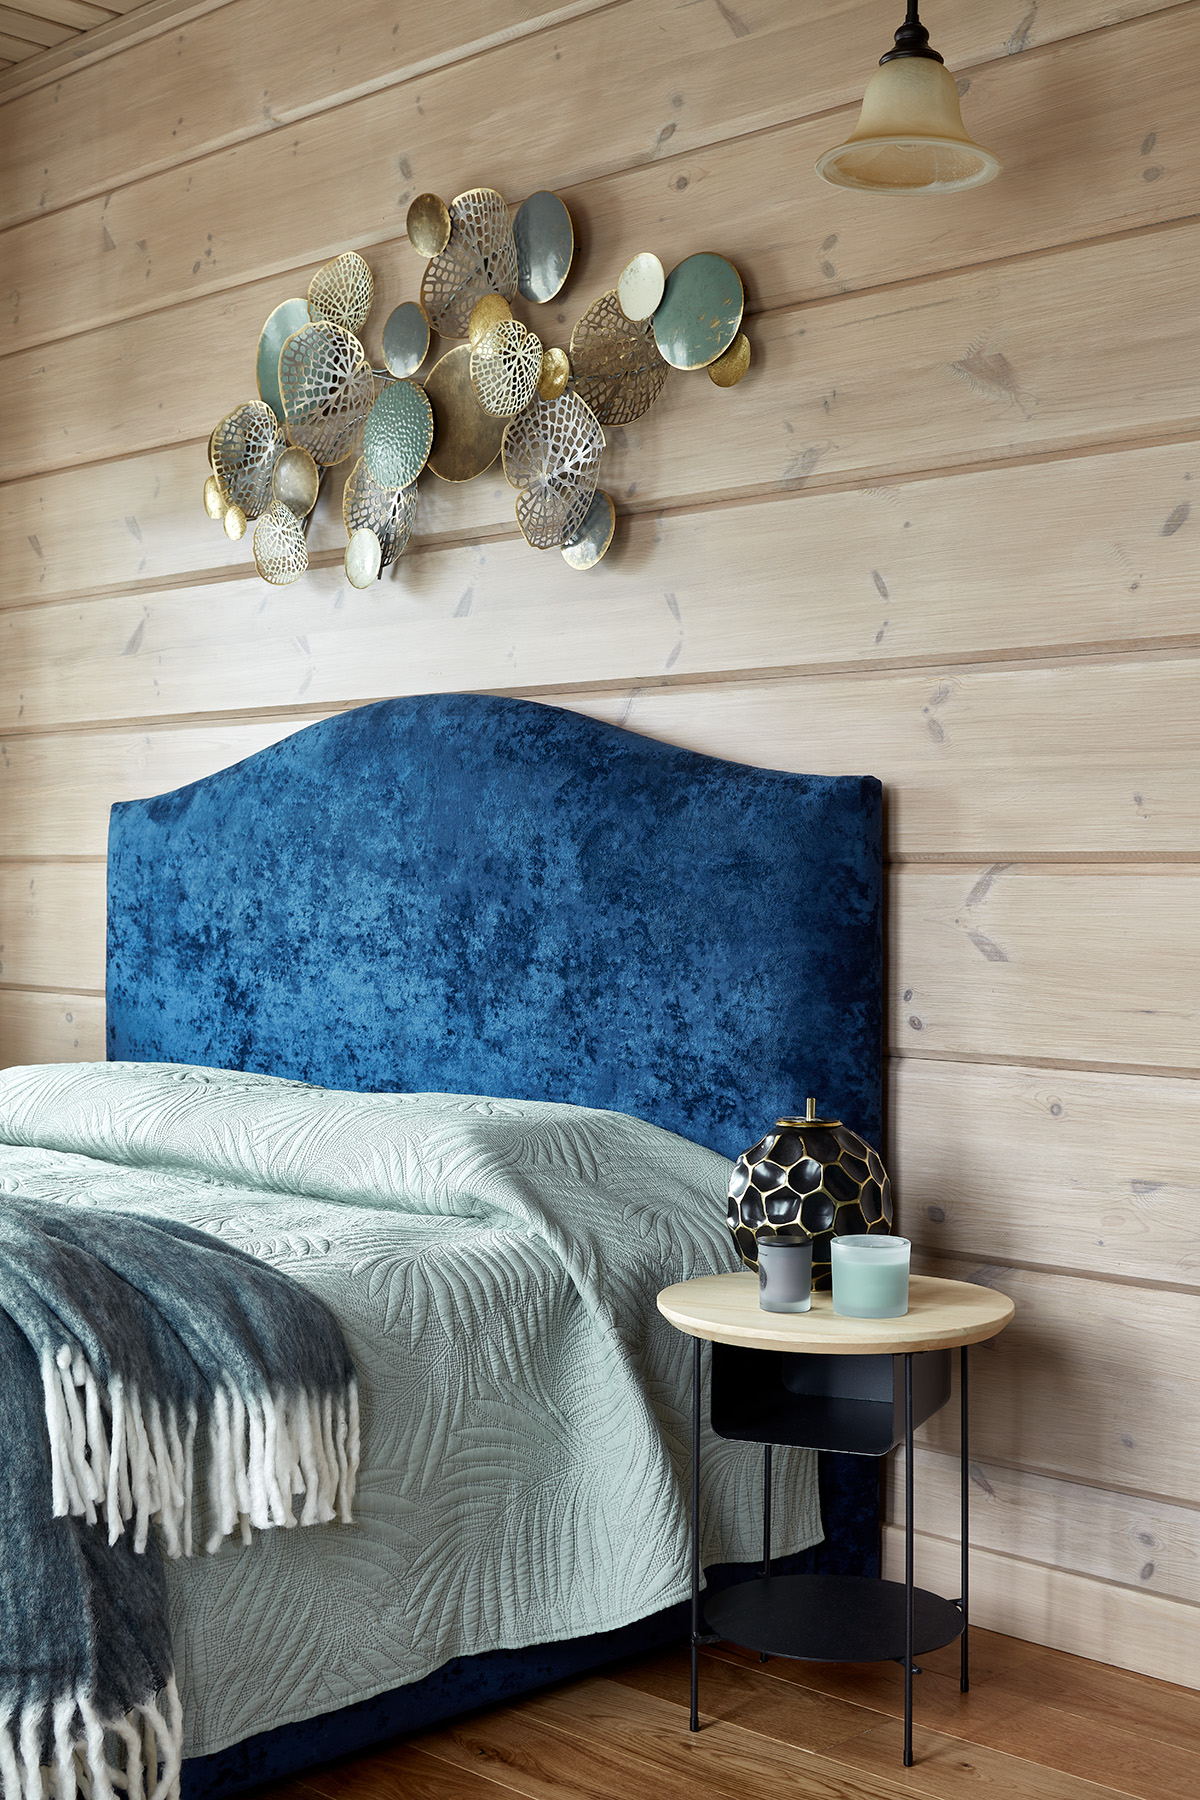 Phòng ngủ phụ cũng được trau chuốt với phụ kiện trang trí trên bức tường tinh tế. Đầu giường màu xanh lam đậm kết hợp với chăn ga gối màu xanh nhạt cho vẻ đẹp thư giãn dễ chịu.